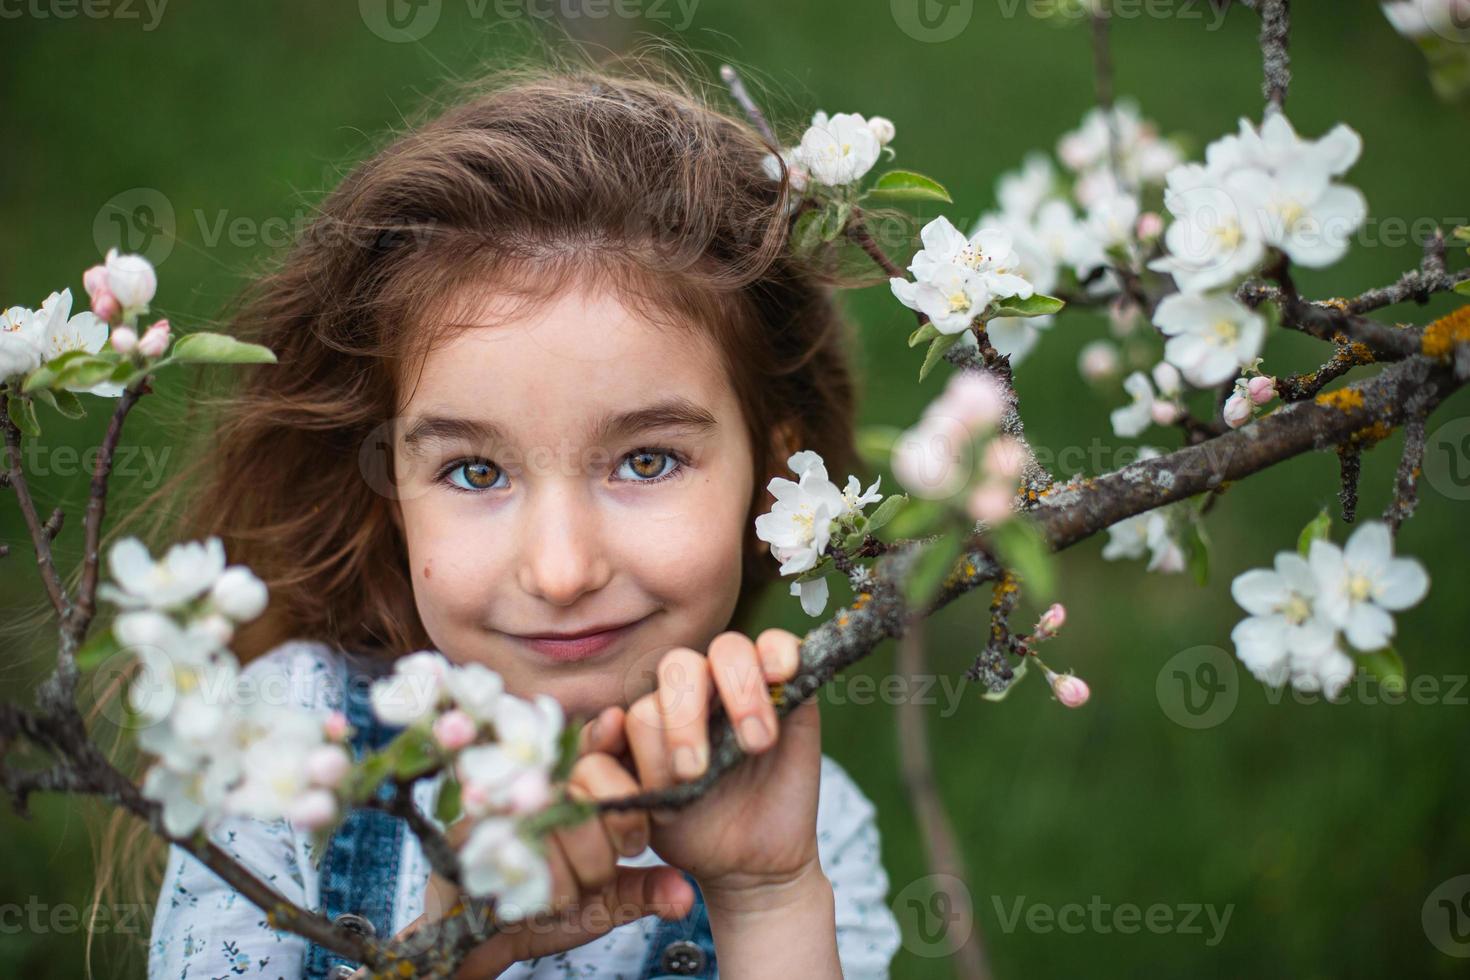 una linda niña de 5 años en un floreciente huerto de manzanas blancas en primavera. primavera, huerta, floración, alergia, fragancia primaveral, ternura, cuidado de la naturaleza. retrato foto